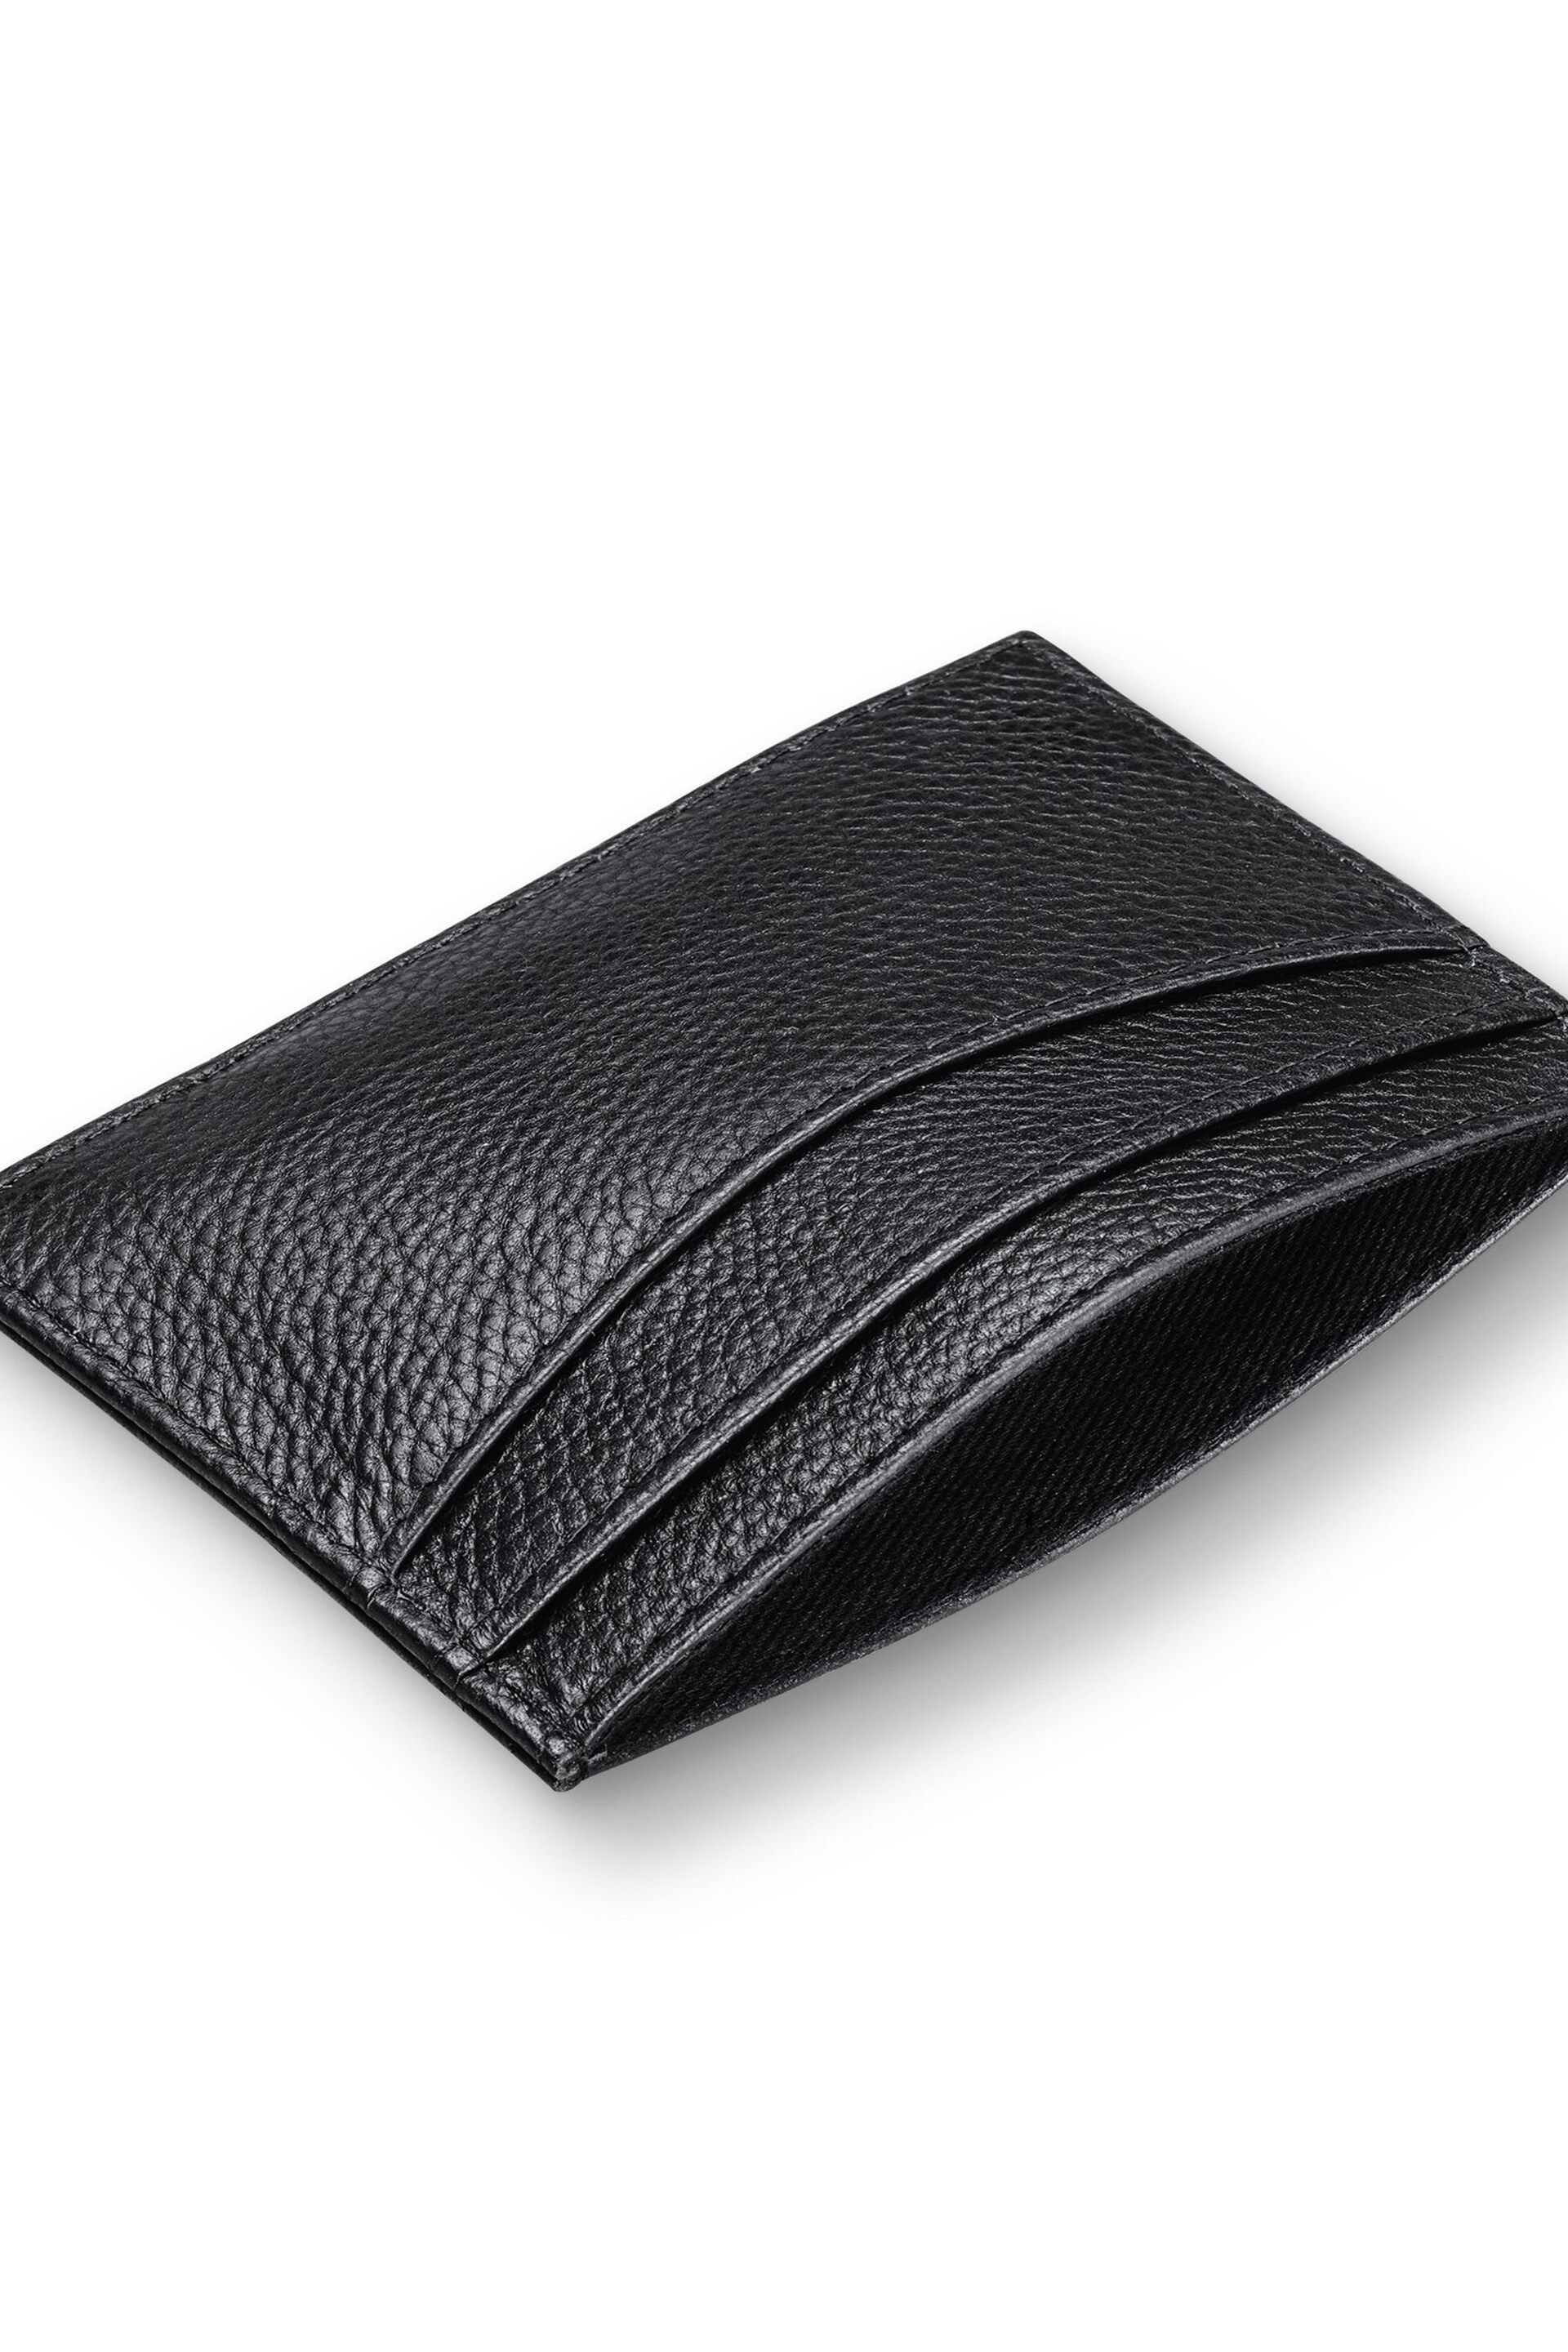 Charles Tyrwhitt Black Leather Card Holder - Image 1 of 4